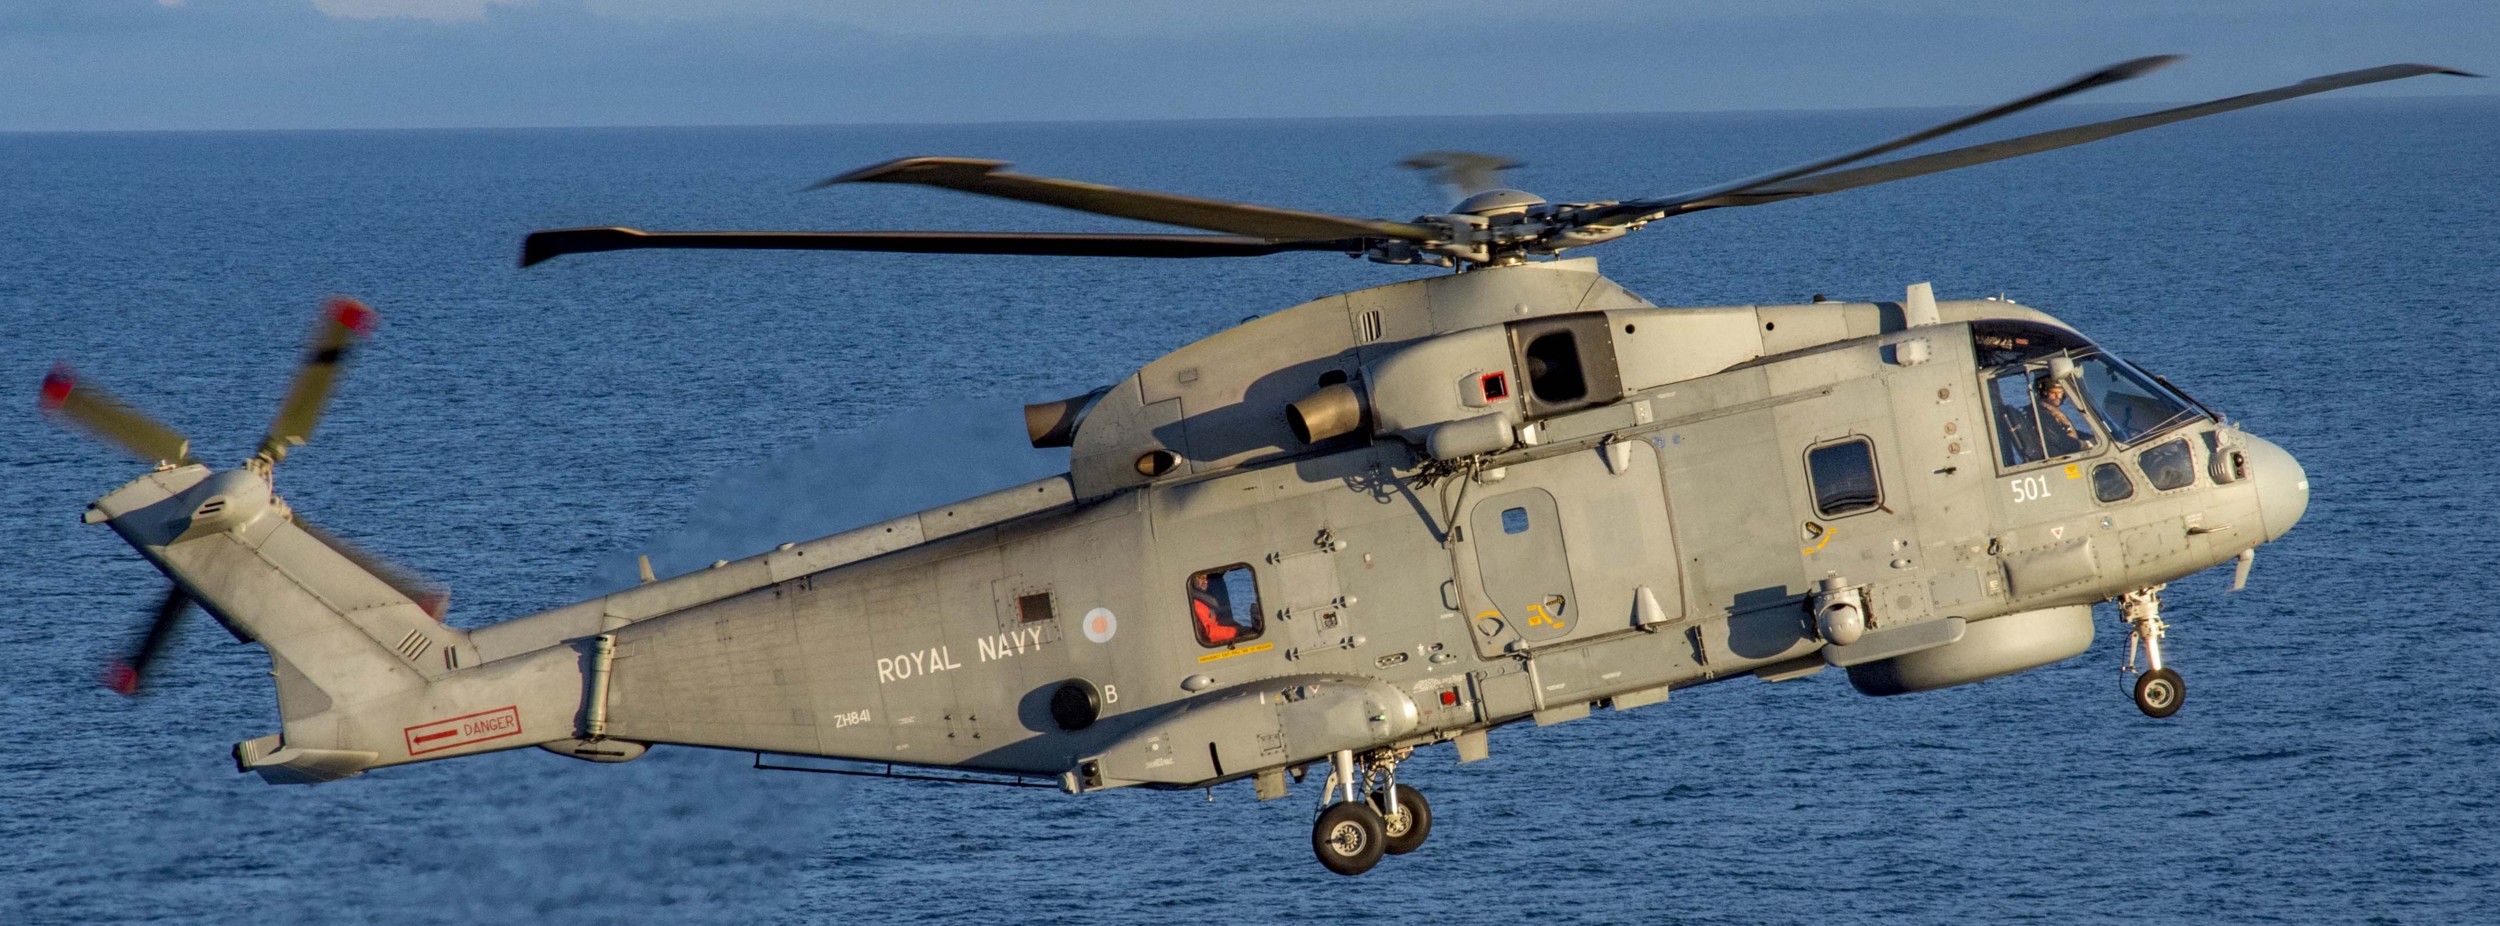 agusta westland leonardo merlin hm2 helicopteraw 101 royal navy fleet air arm 13x